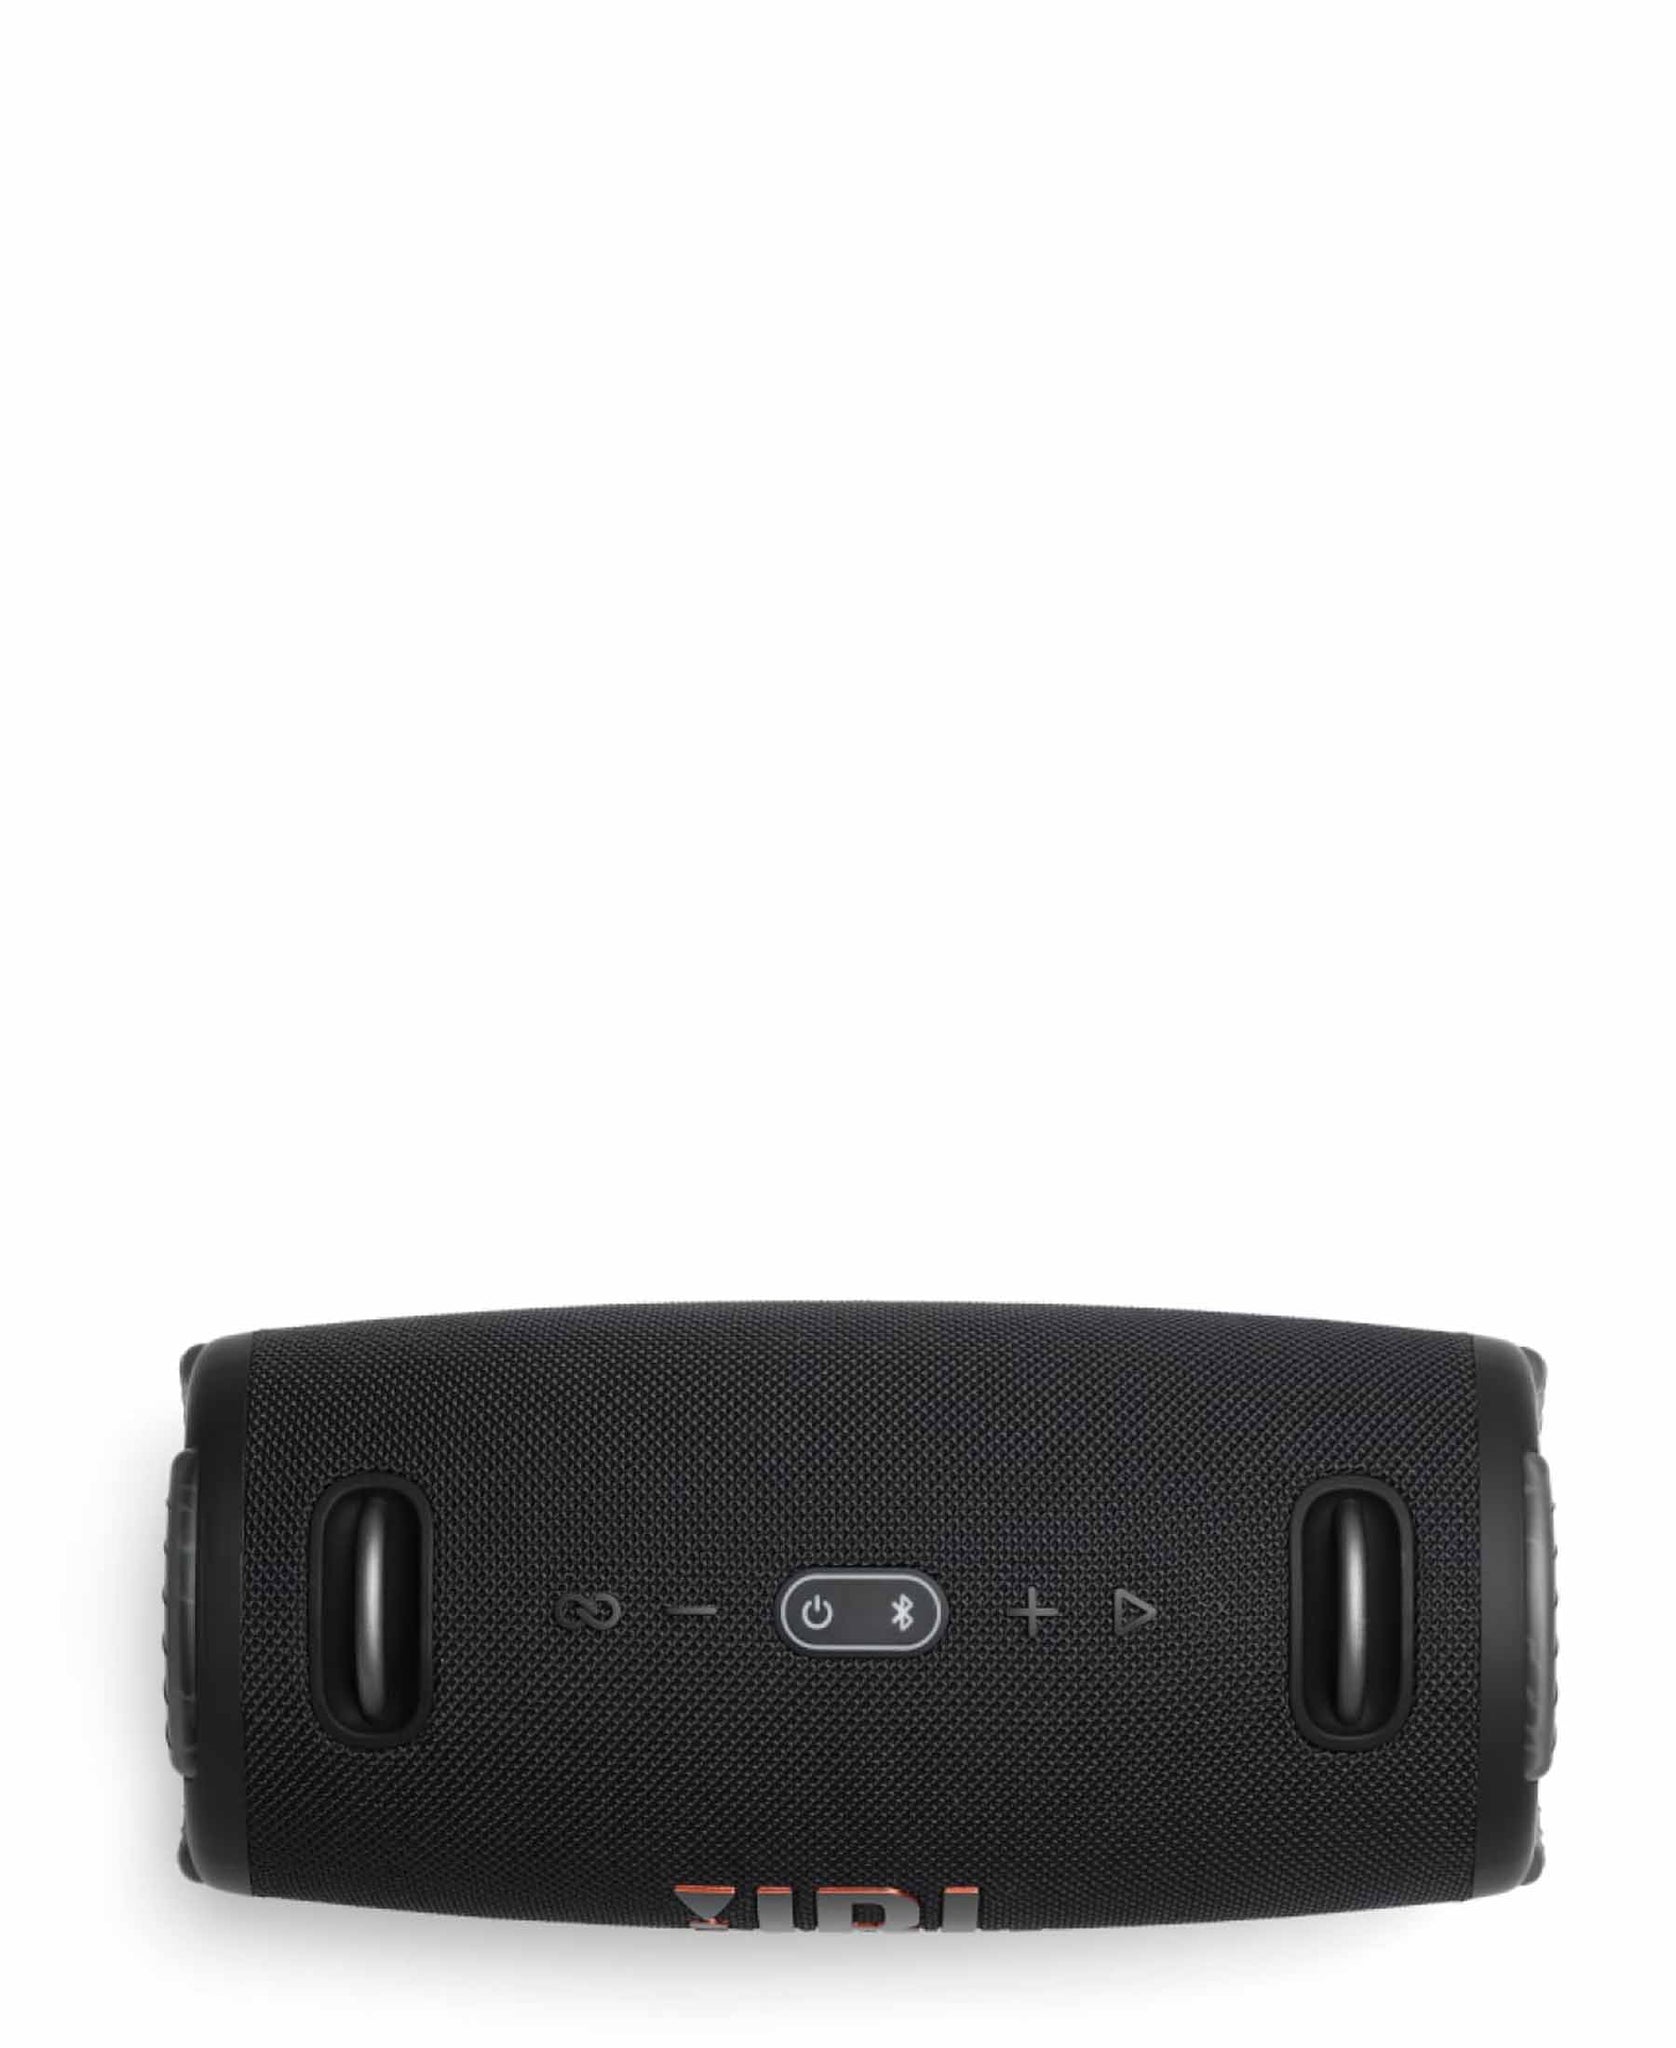 JBL Xtreme 3 Portable Waterproof Speaker - Black